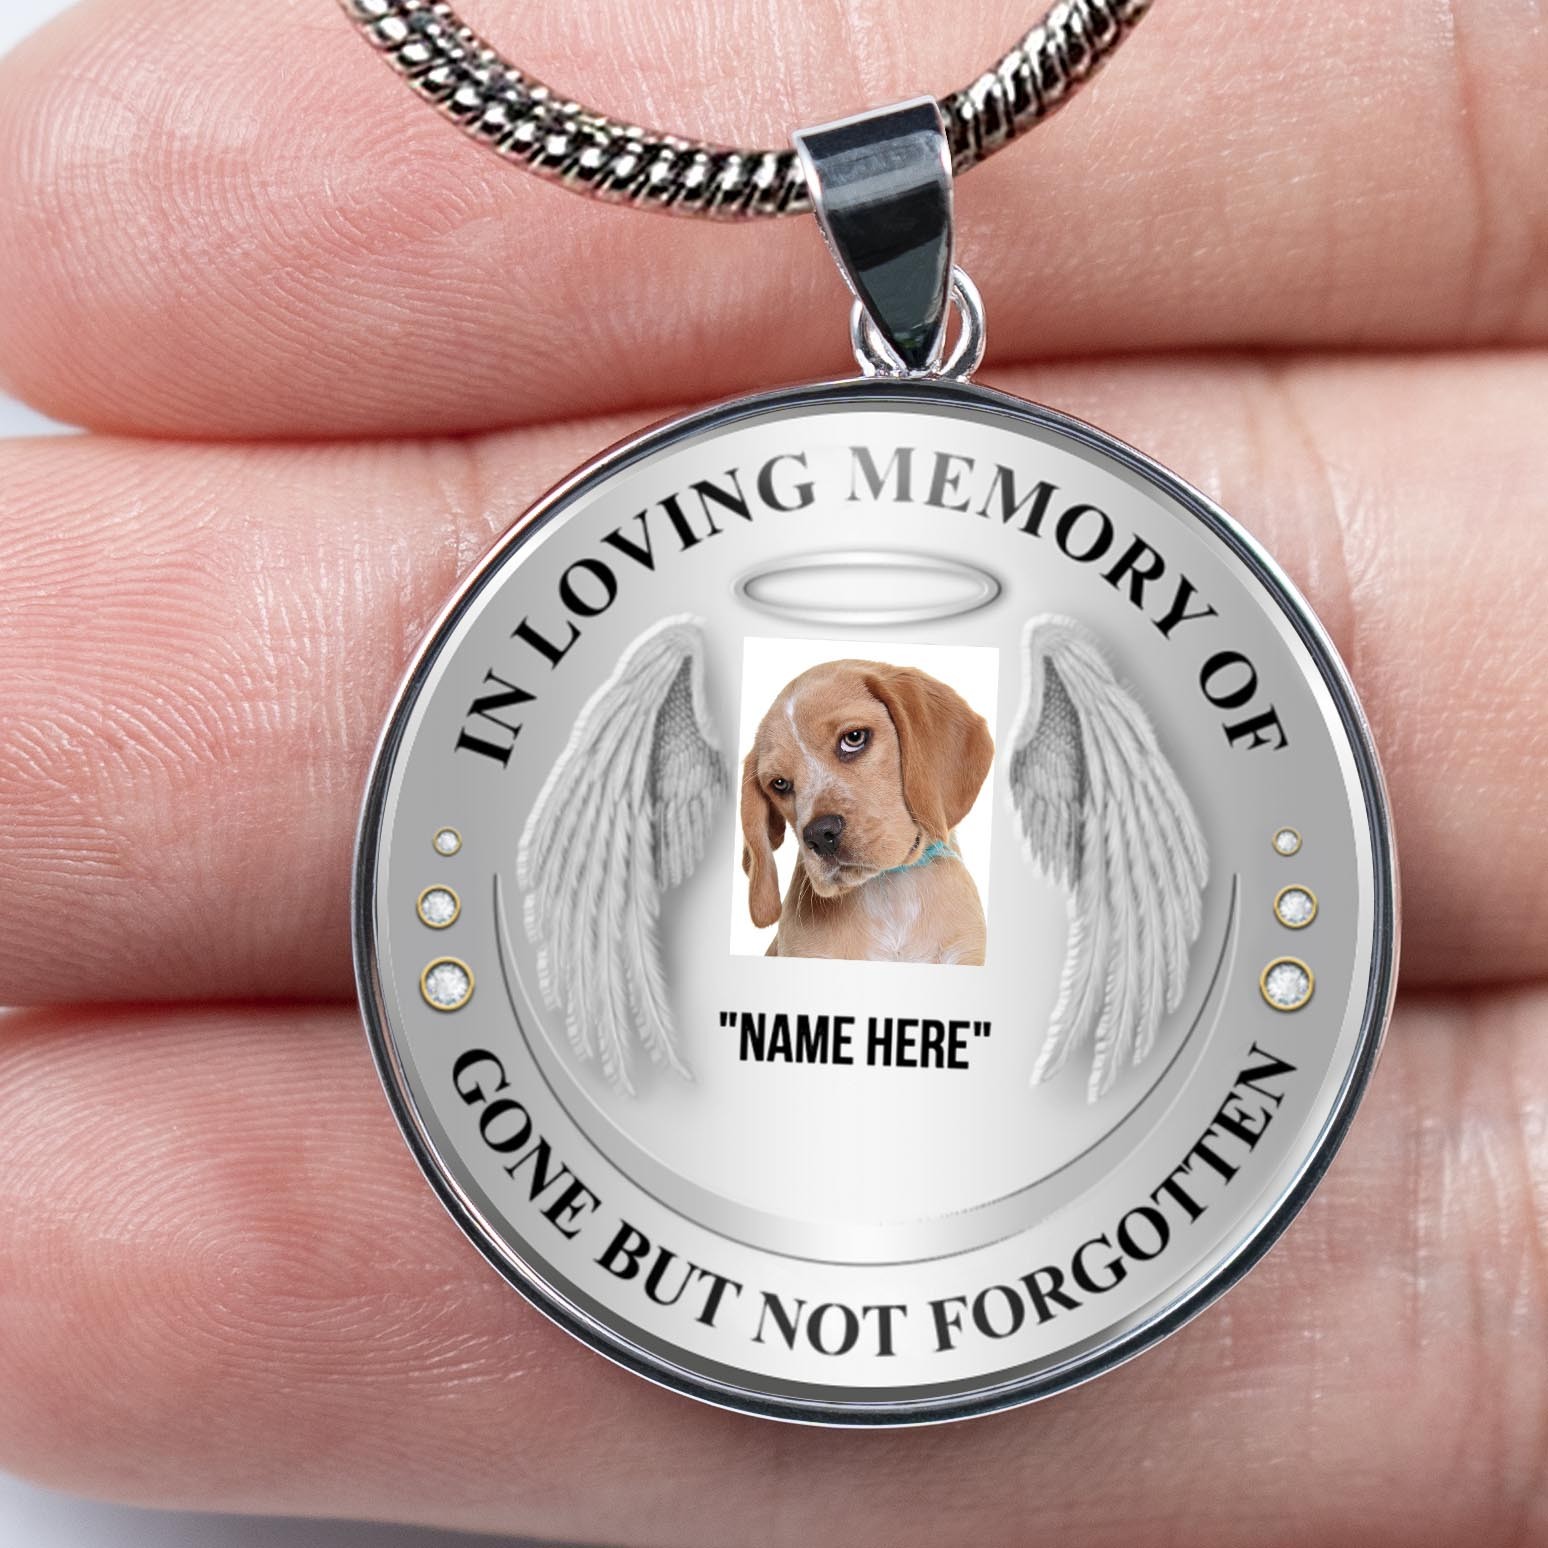 Collier personnalisé en souvenir affectueux de photo pour votre ami, chien de compagnie